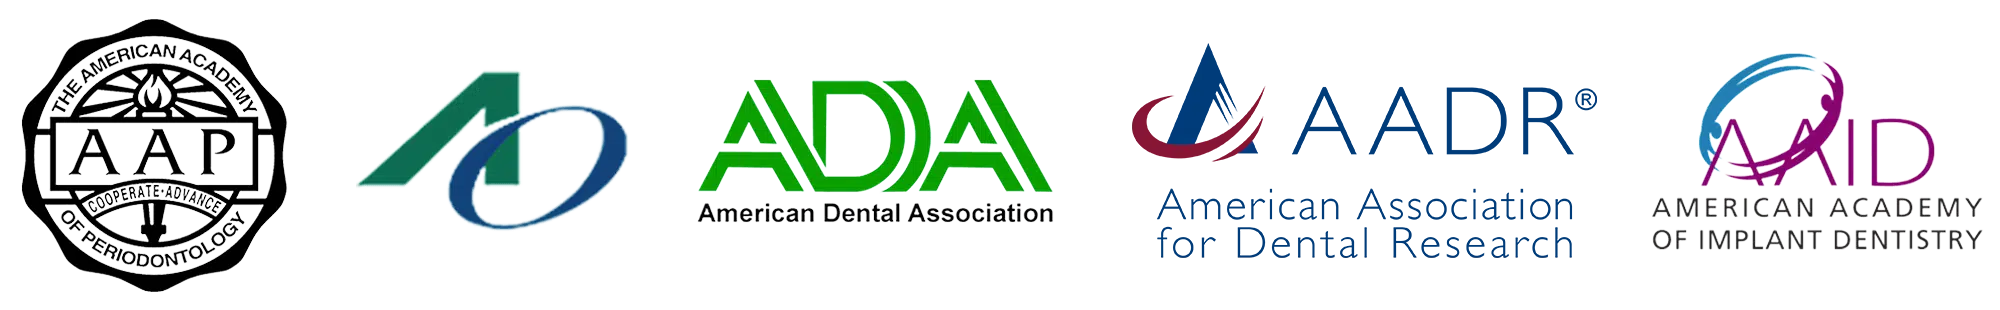 Dental Association Logos